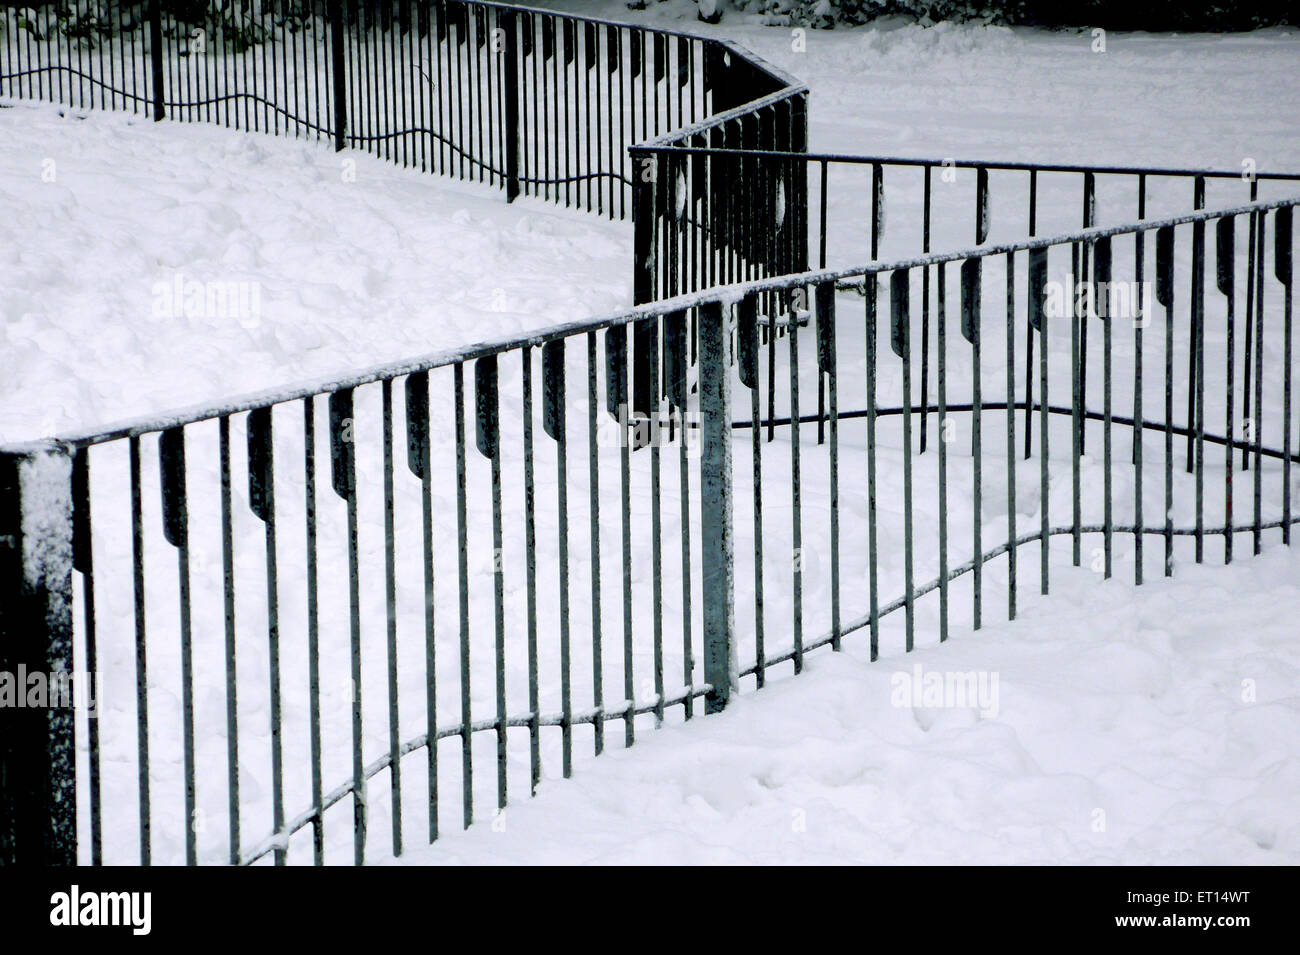 Fence with snow, London, England, United Kingdom, UK Stock Photo